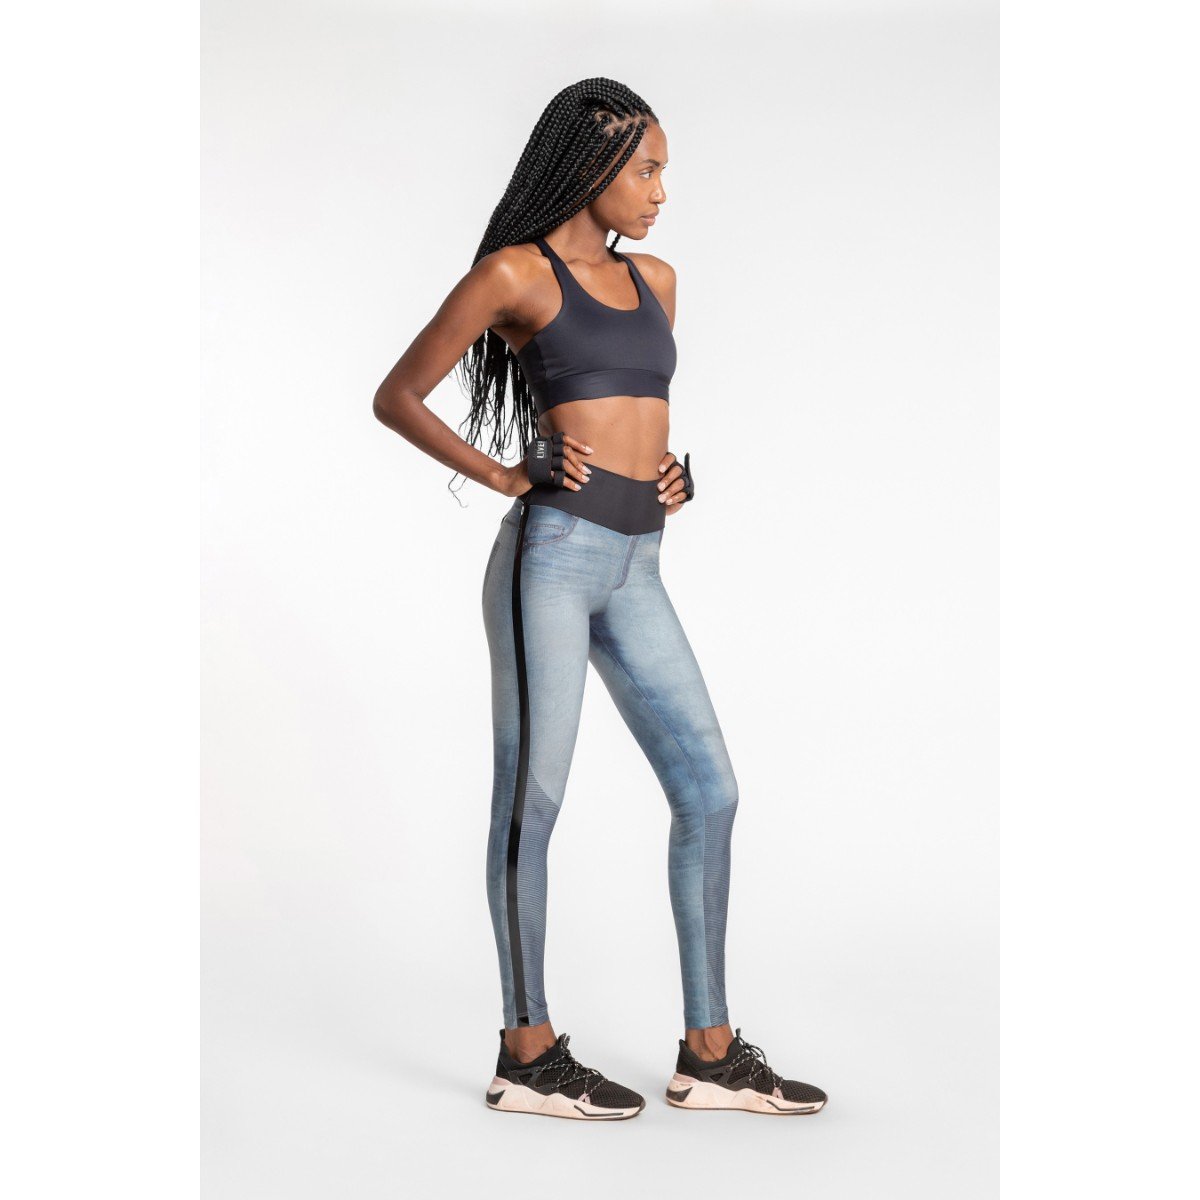 Simone Gauer  Praia e Fitness - Calça Legging Denim Cool Stripe